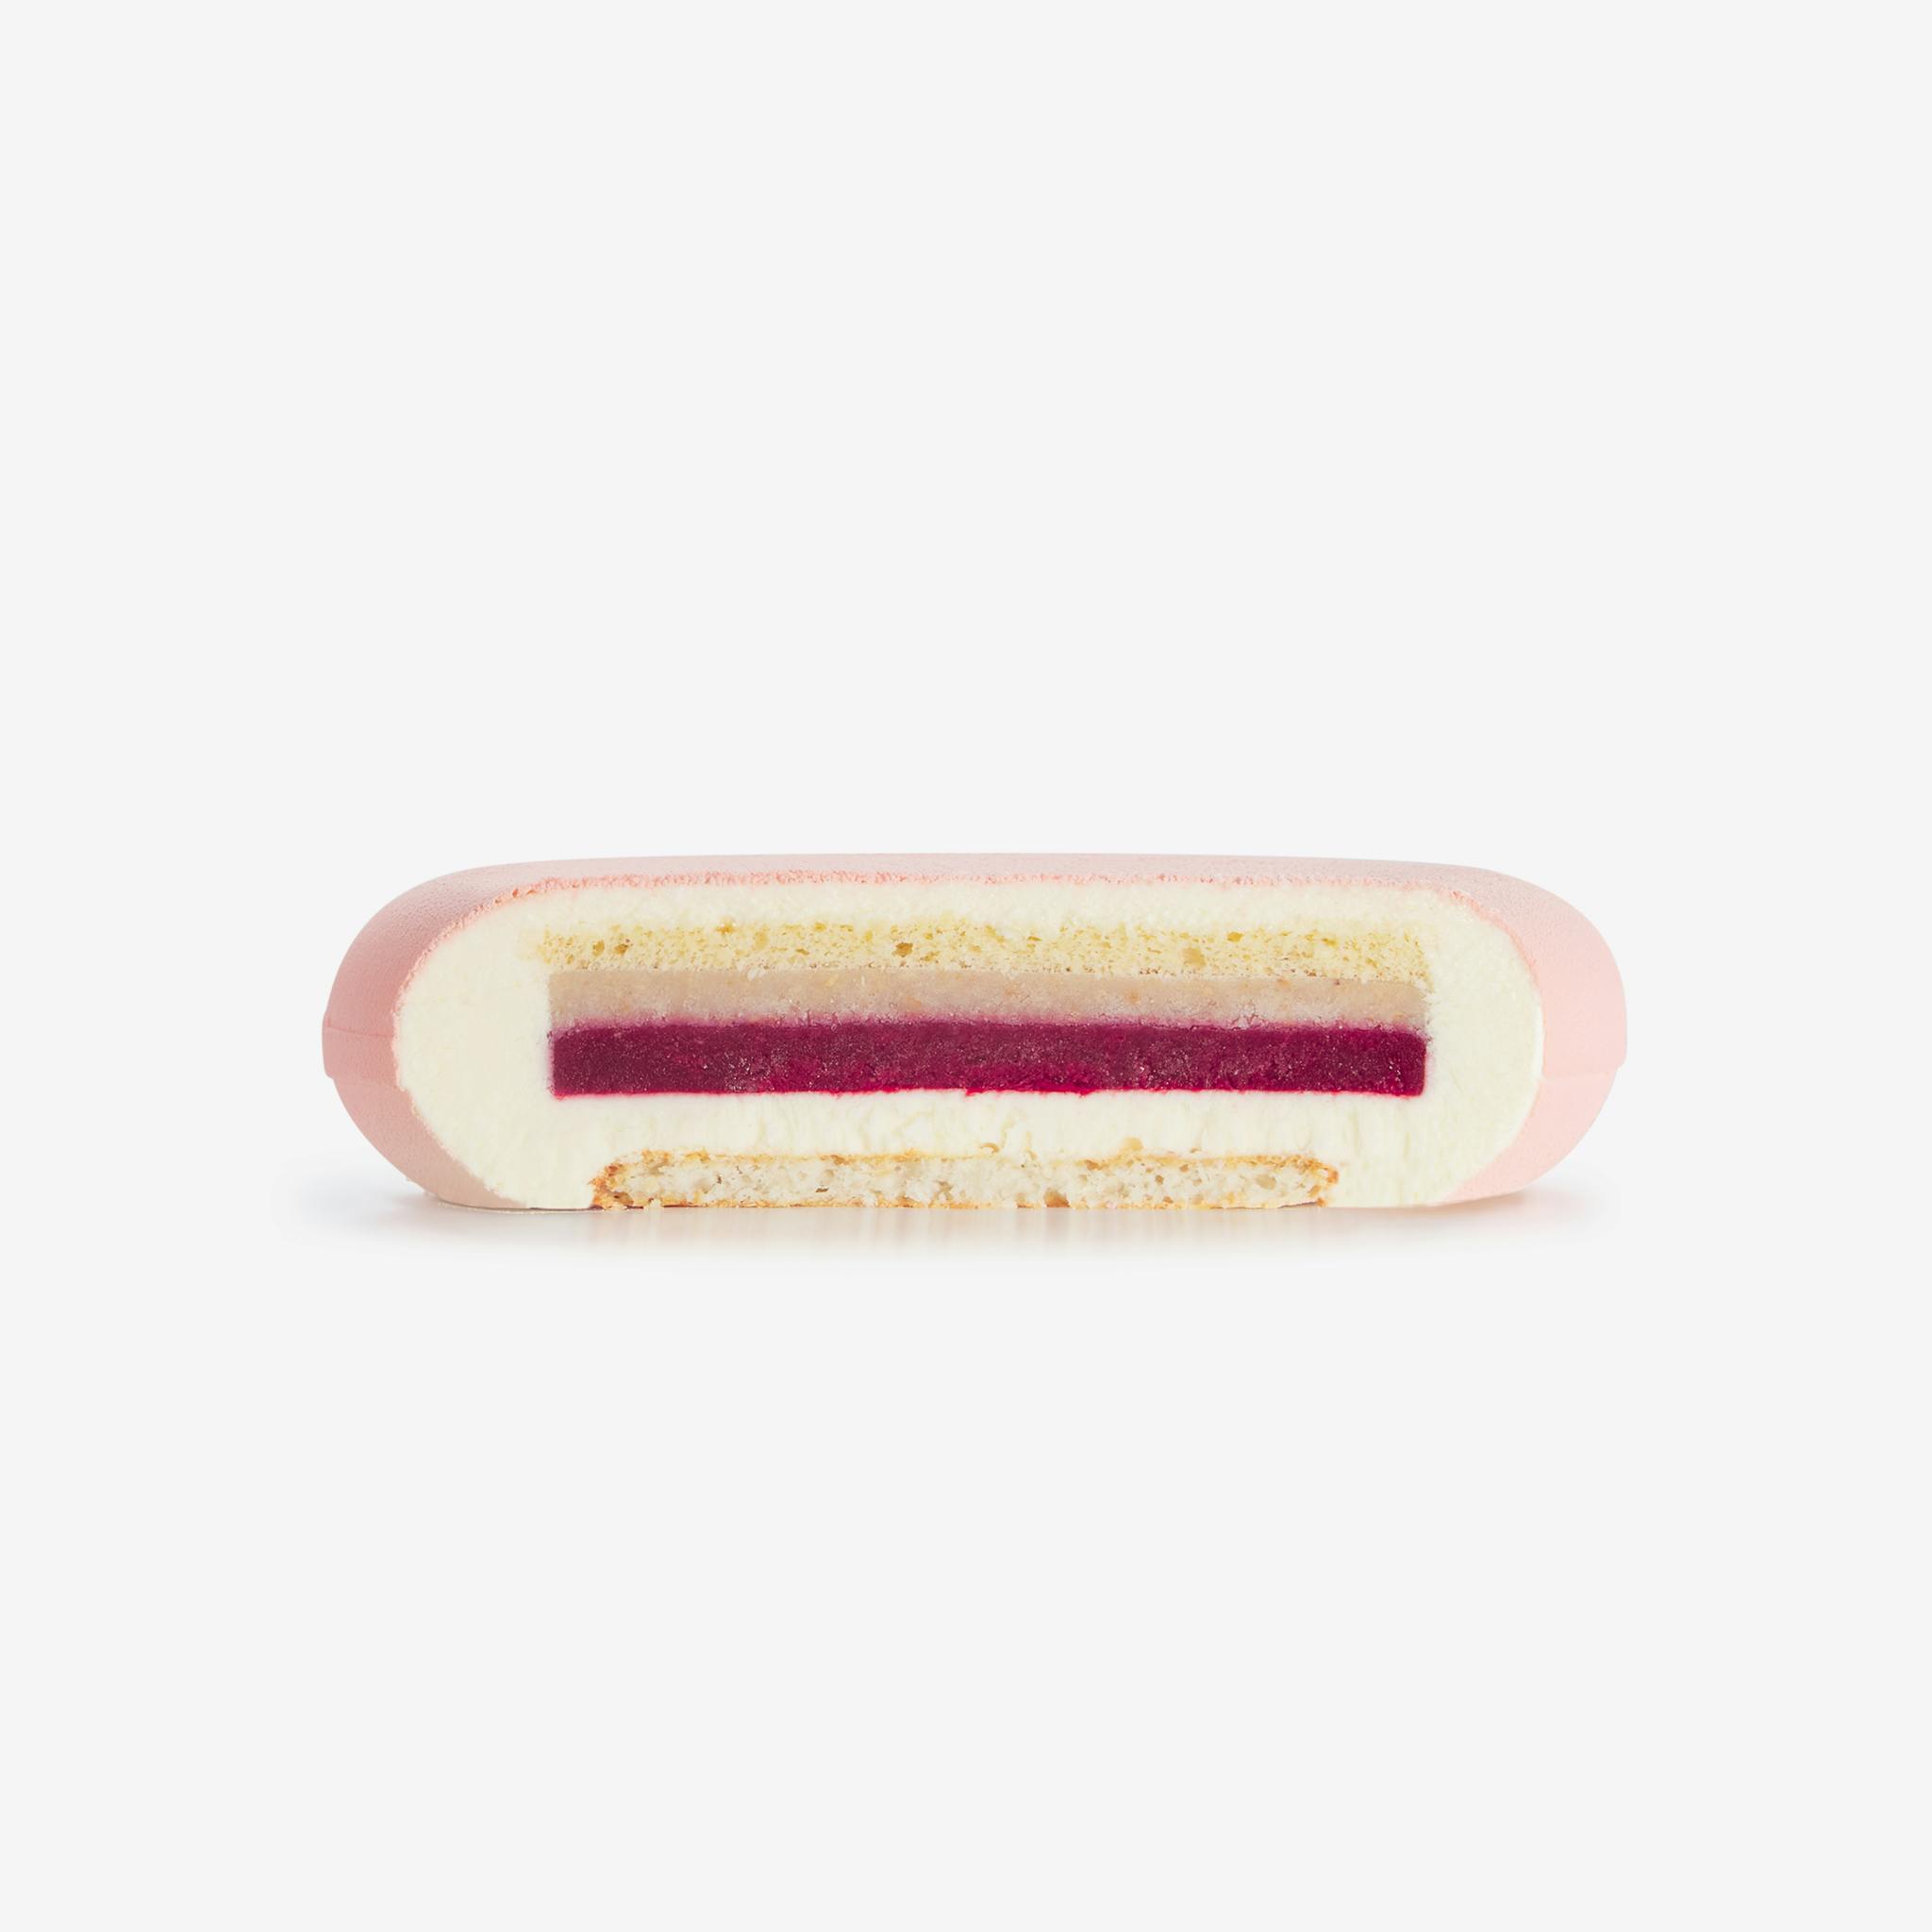 LaFuong Pastry – Be in Blossom – Vải, Phúc bồn tử & Dừa. Mang đến một sự cân bằng tuyệt vời giữa vị chua nhẹ, ngọt thanh và thơm ngậy trong cùng một miếng bánh bằng cách sử dụng vải, dừa và phúc bồn tử. Có thể nói đây chính là sự kết hợp rất thú vị giữa Á & Âu. Không chỉ đặc biệt trong hương vị, lớp bạt bánh của Be in Blossom cũng có hai kết cấu khác nhau: cảm giác mềm xốp đến từ lớp Sponge dừa và một chút độ giòn của sợi dừa tươi nằm trong lớp bạt Dacquoise. ,Đây không chỉ là một món quà tuyệt vời, mà còn là lựa chọn xứng đáng cho mọi bữa tiệc sinh nhật, gặp gỡ bạn bè hay các dịp họp mặt gia đình.